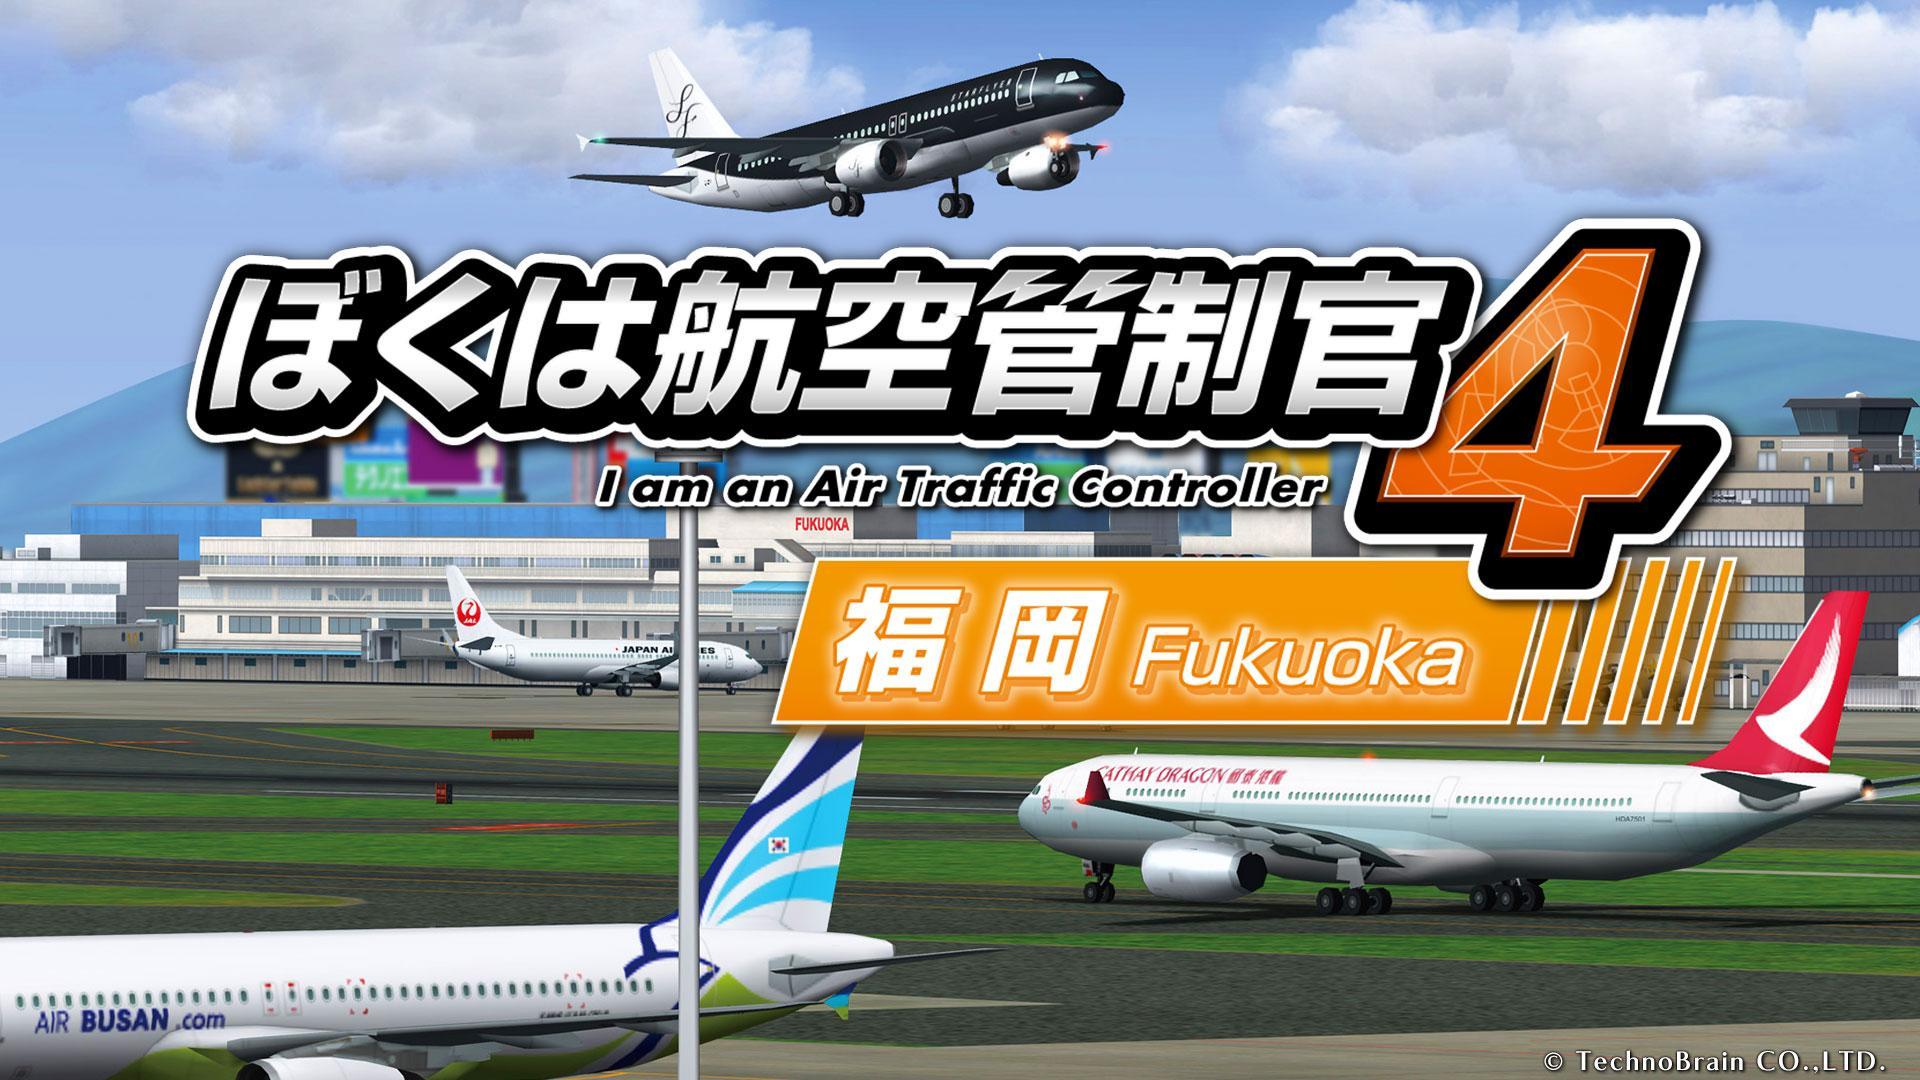 Screenshot 1 of Isa akong Air Traffic Controller 4: Fukuoka 1.1.40